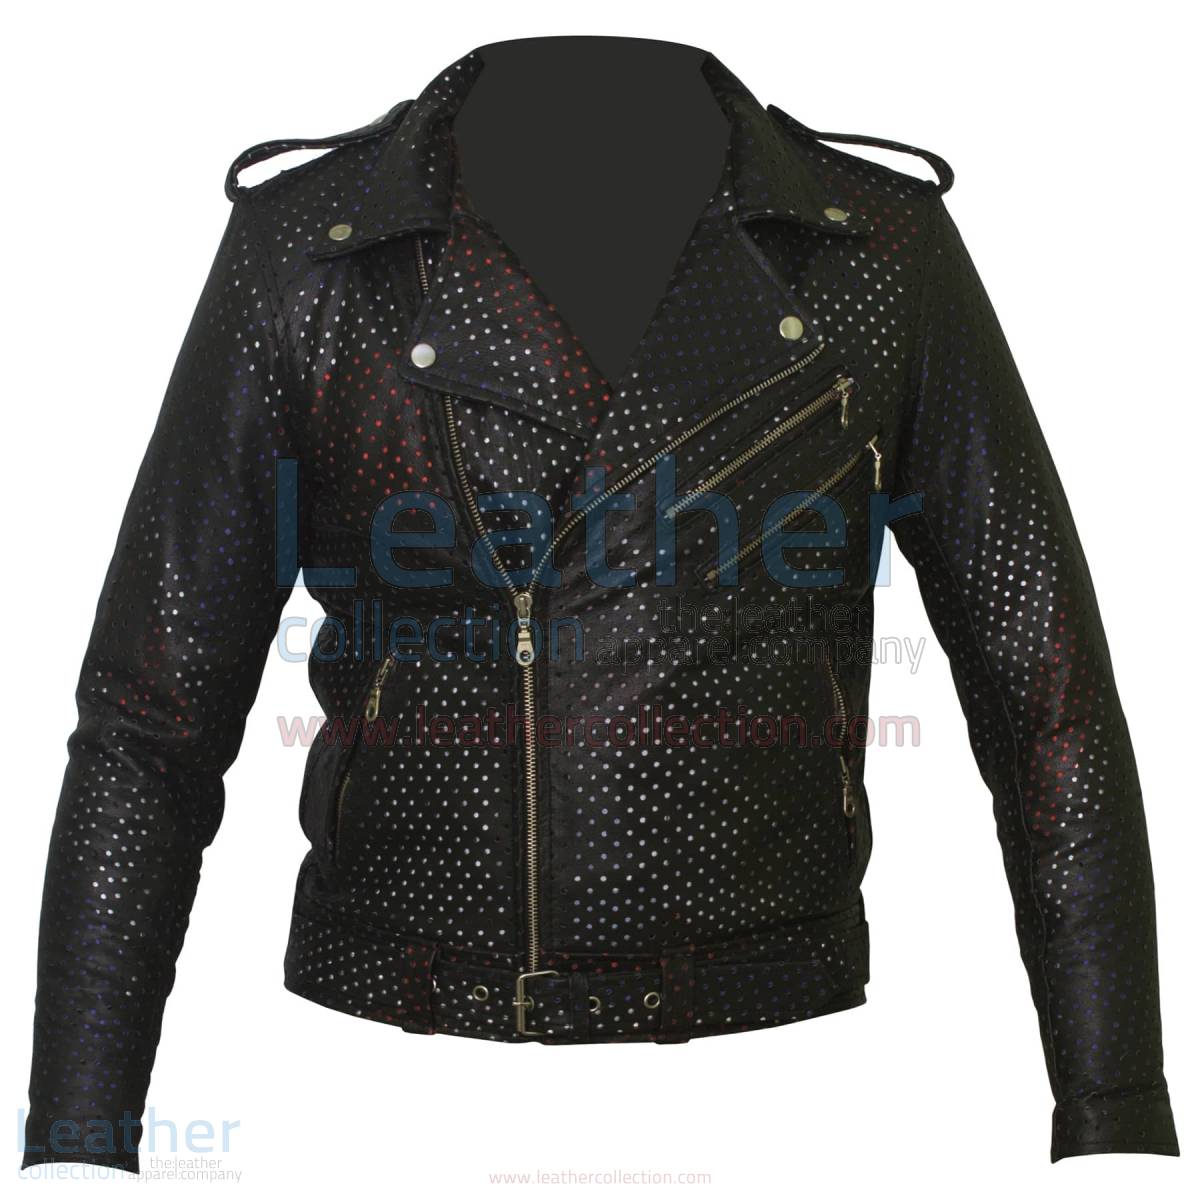 Union Jack Perforated Fashion Leather Jacket –  Jacket